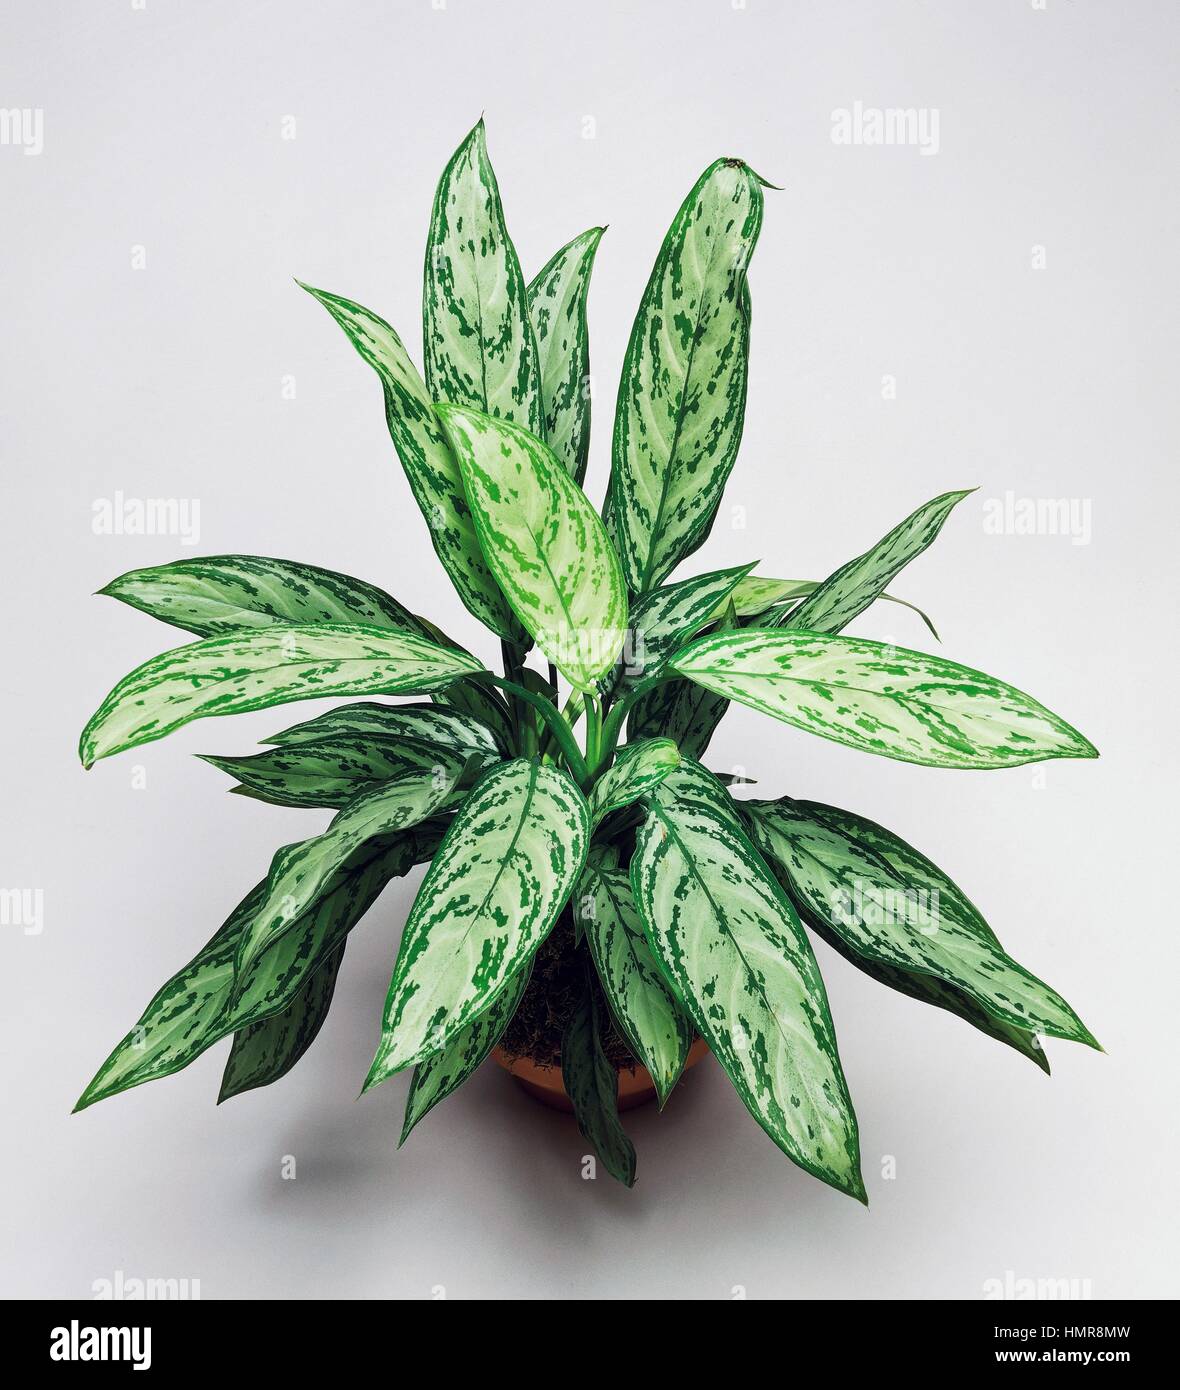 Philippine-evergreen (Aglaonema commutatum), Araceae. Stock Photo